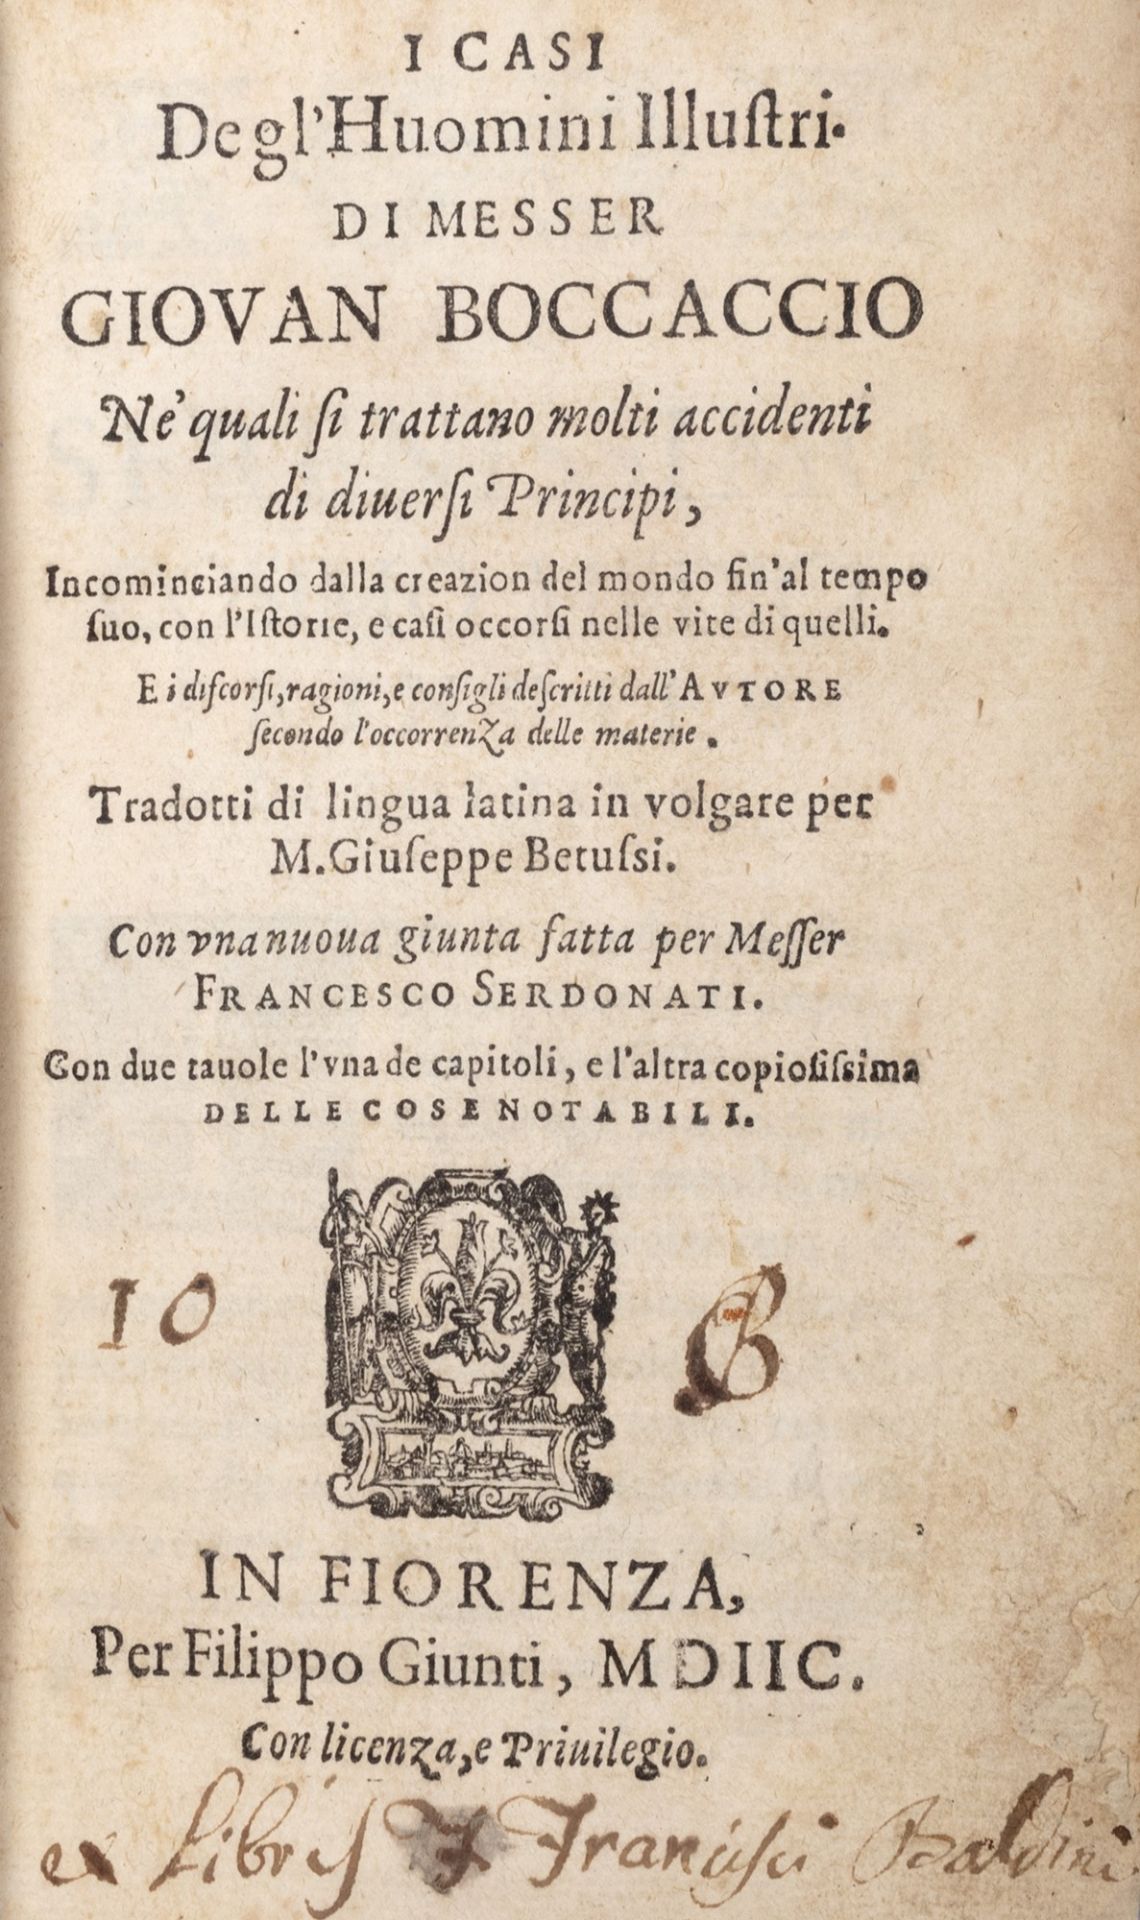 Boccaccio, Giovanni - The cases of illustrious men